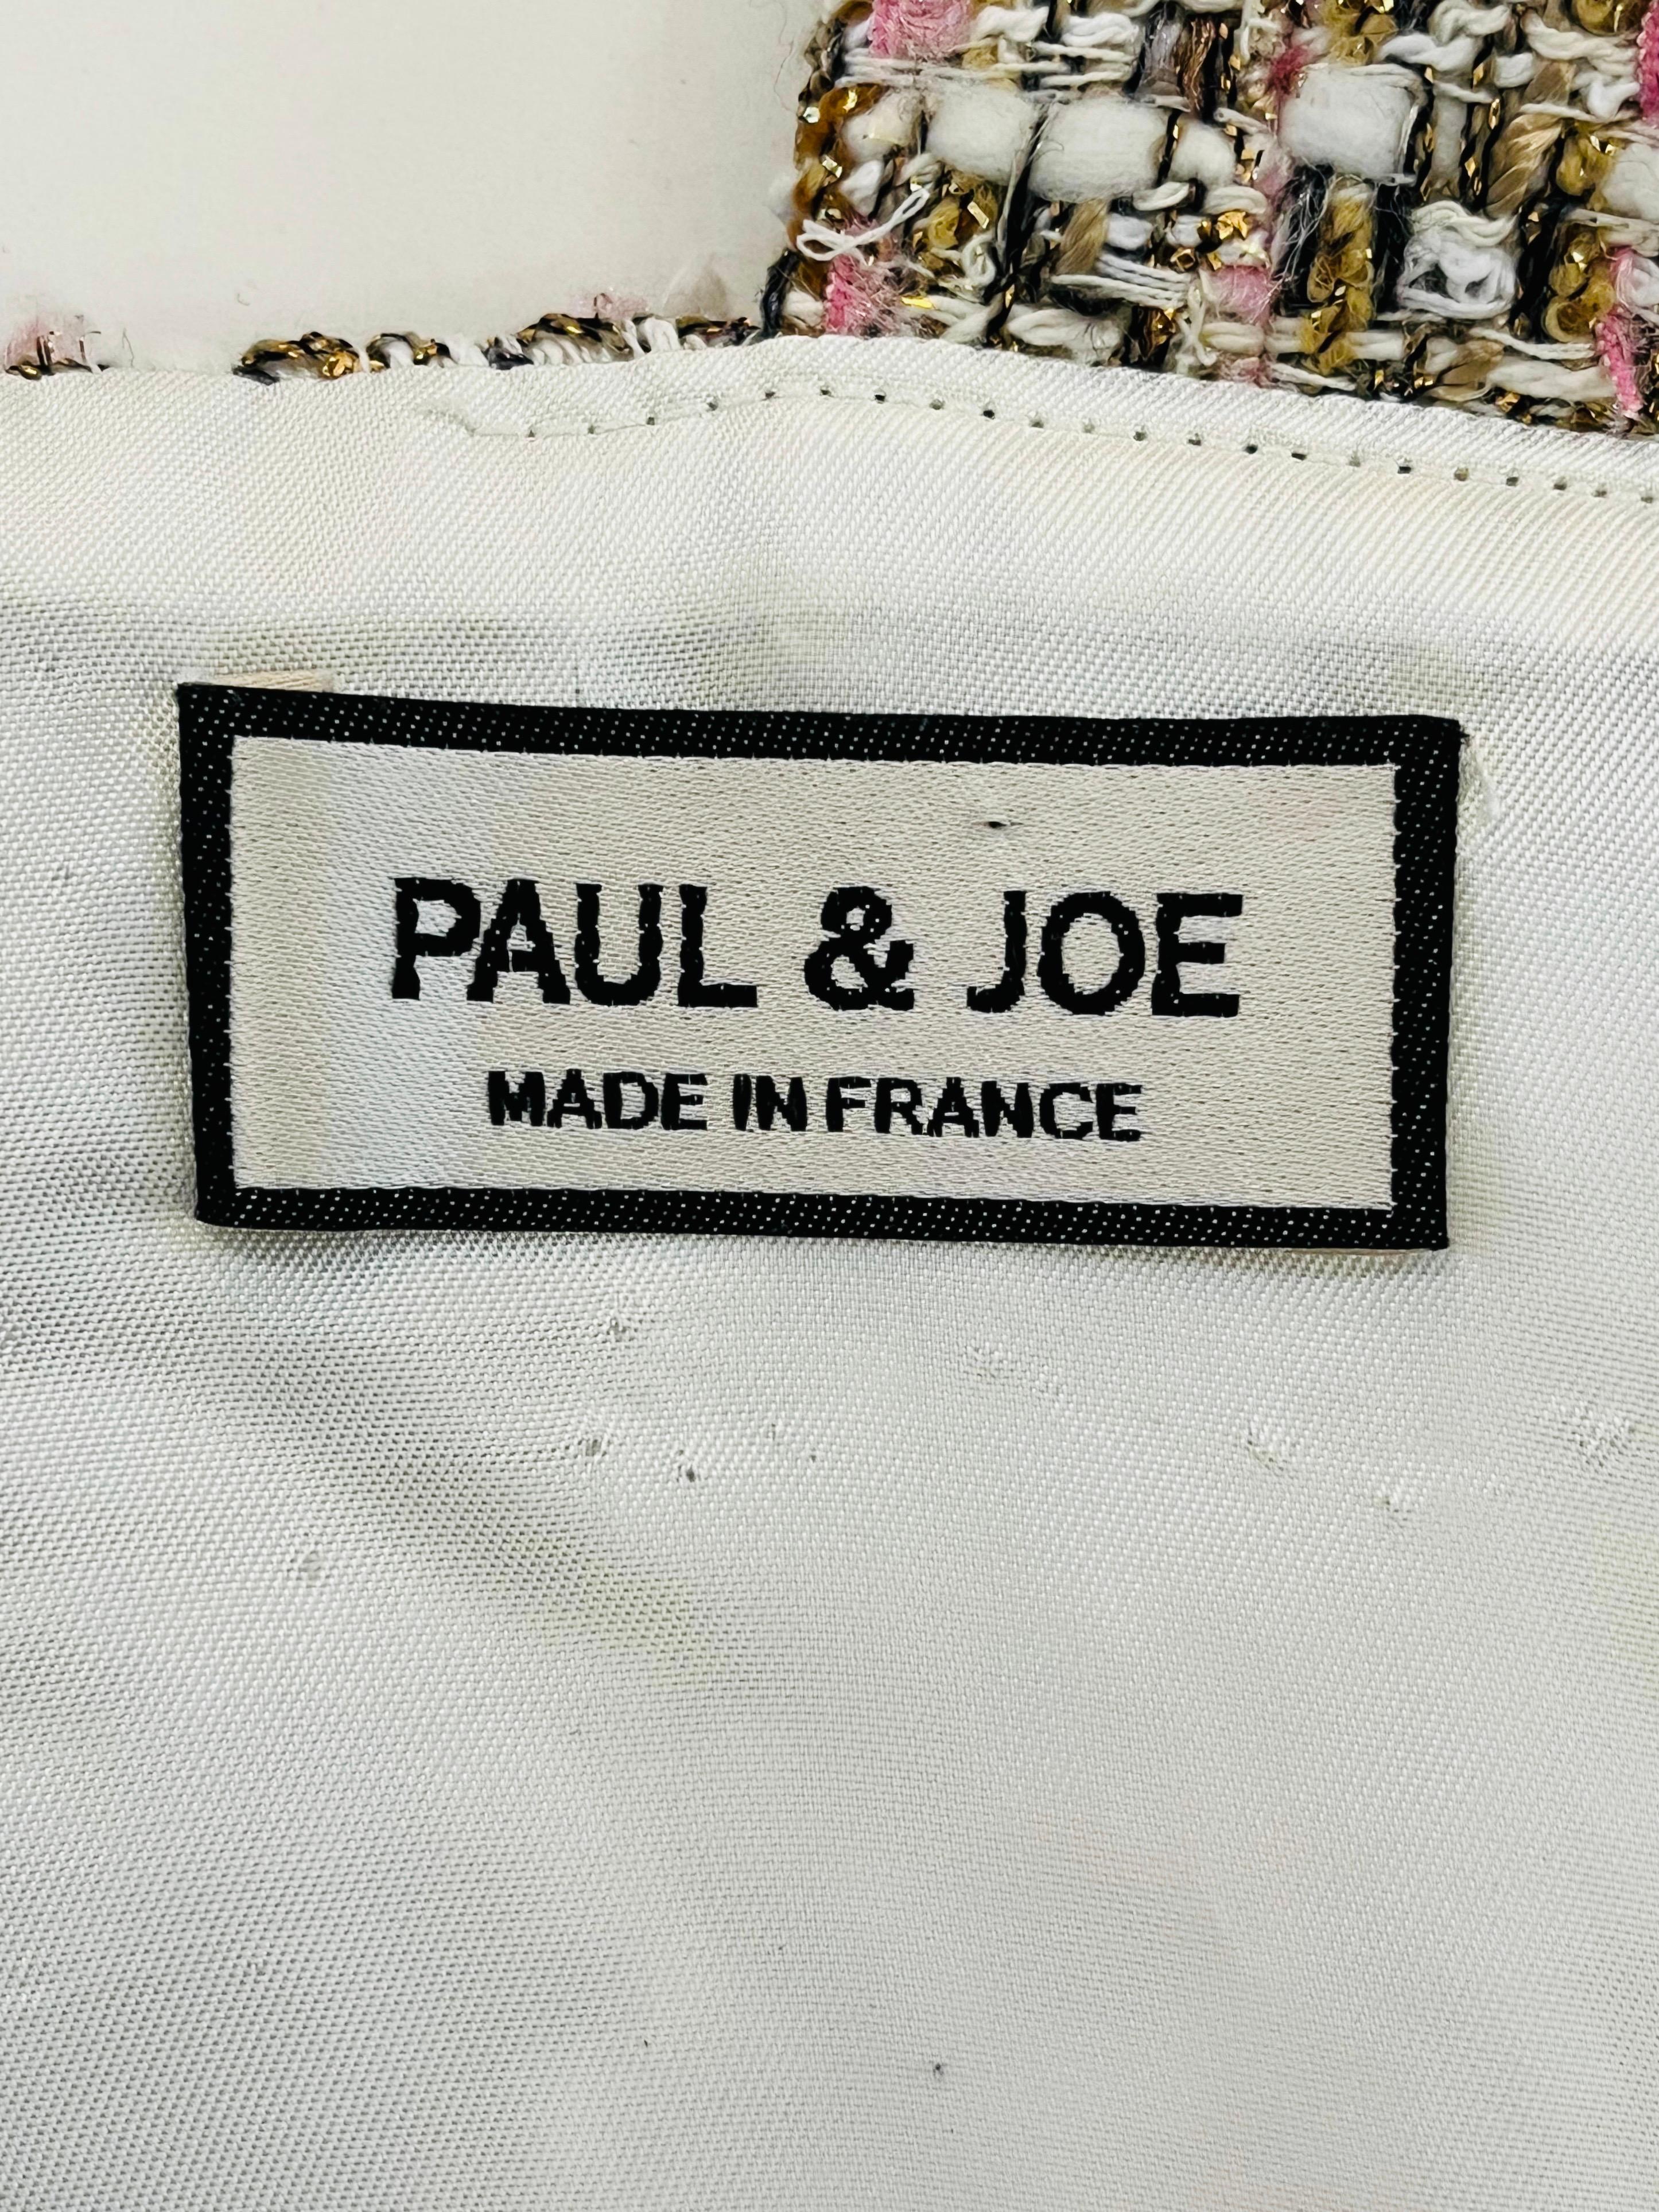 Paul & Joe Tweed Crop Top For Sale 2